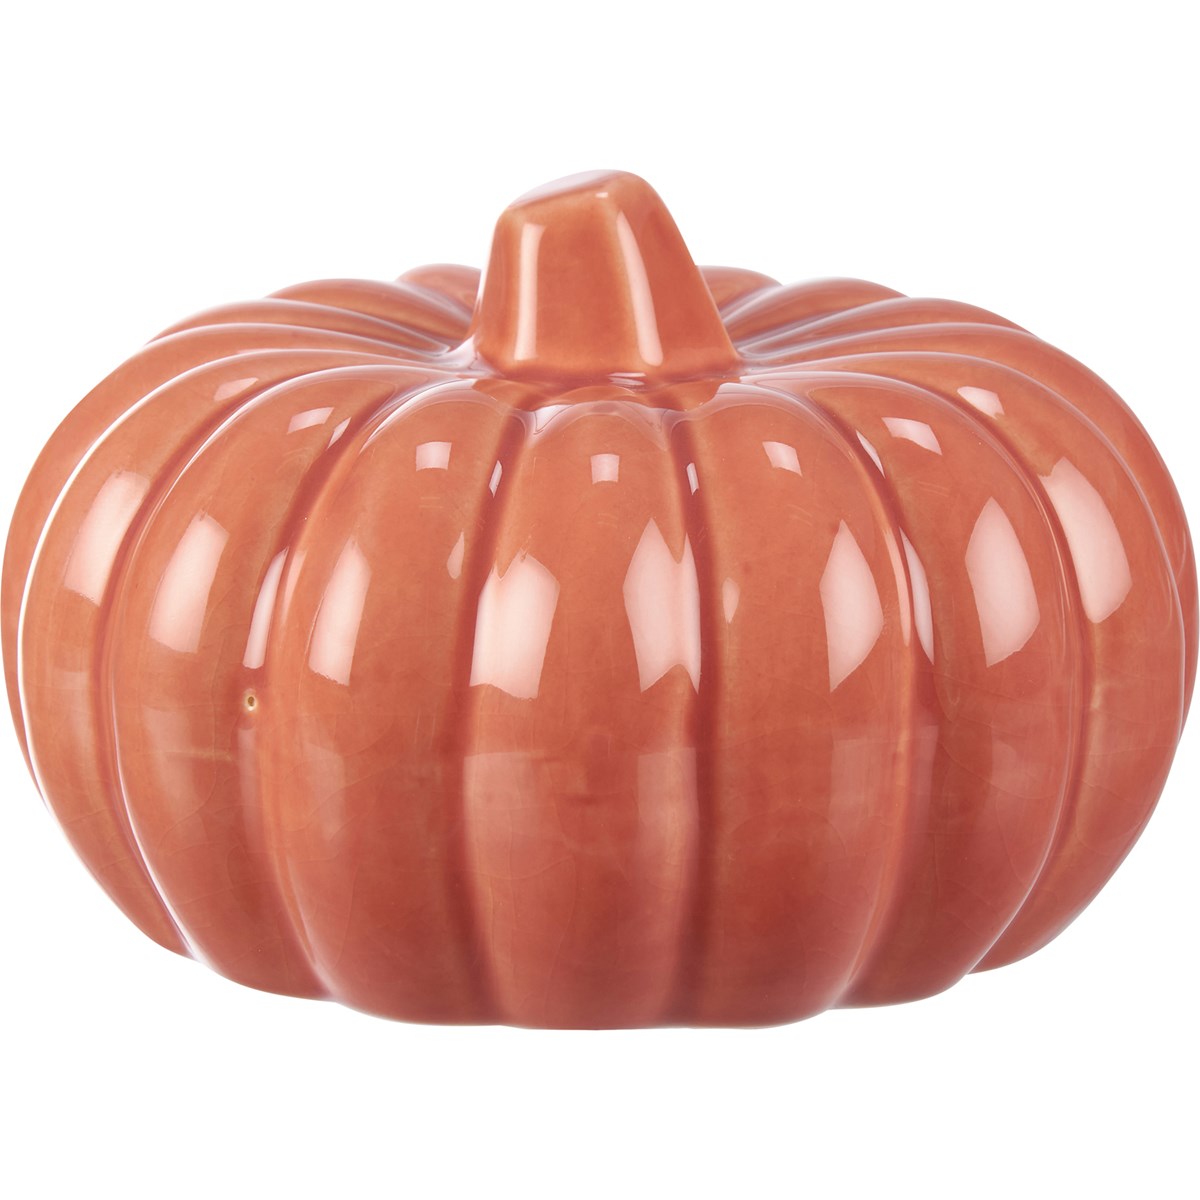 Medium Orange Ceramic Pumpkin - Ceramic